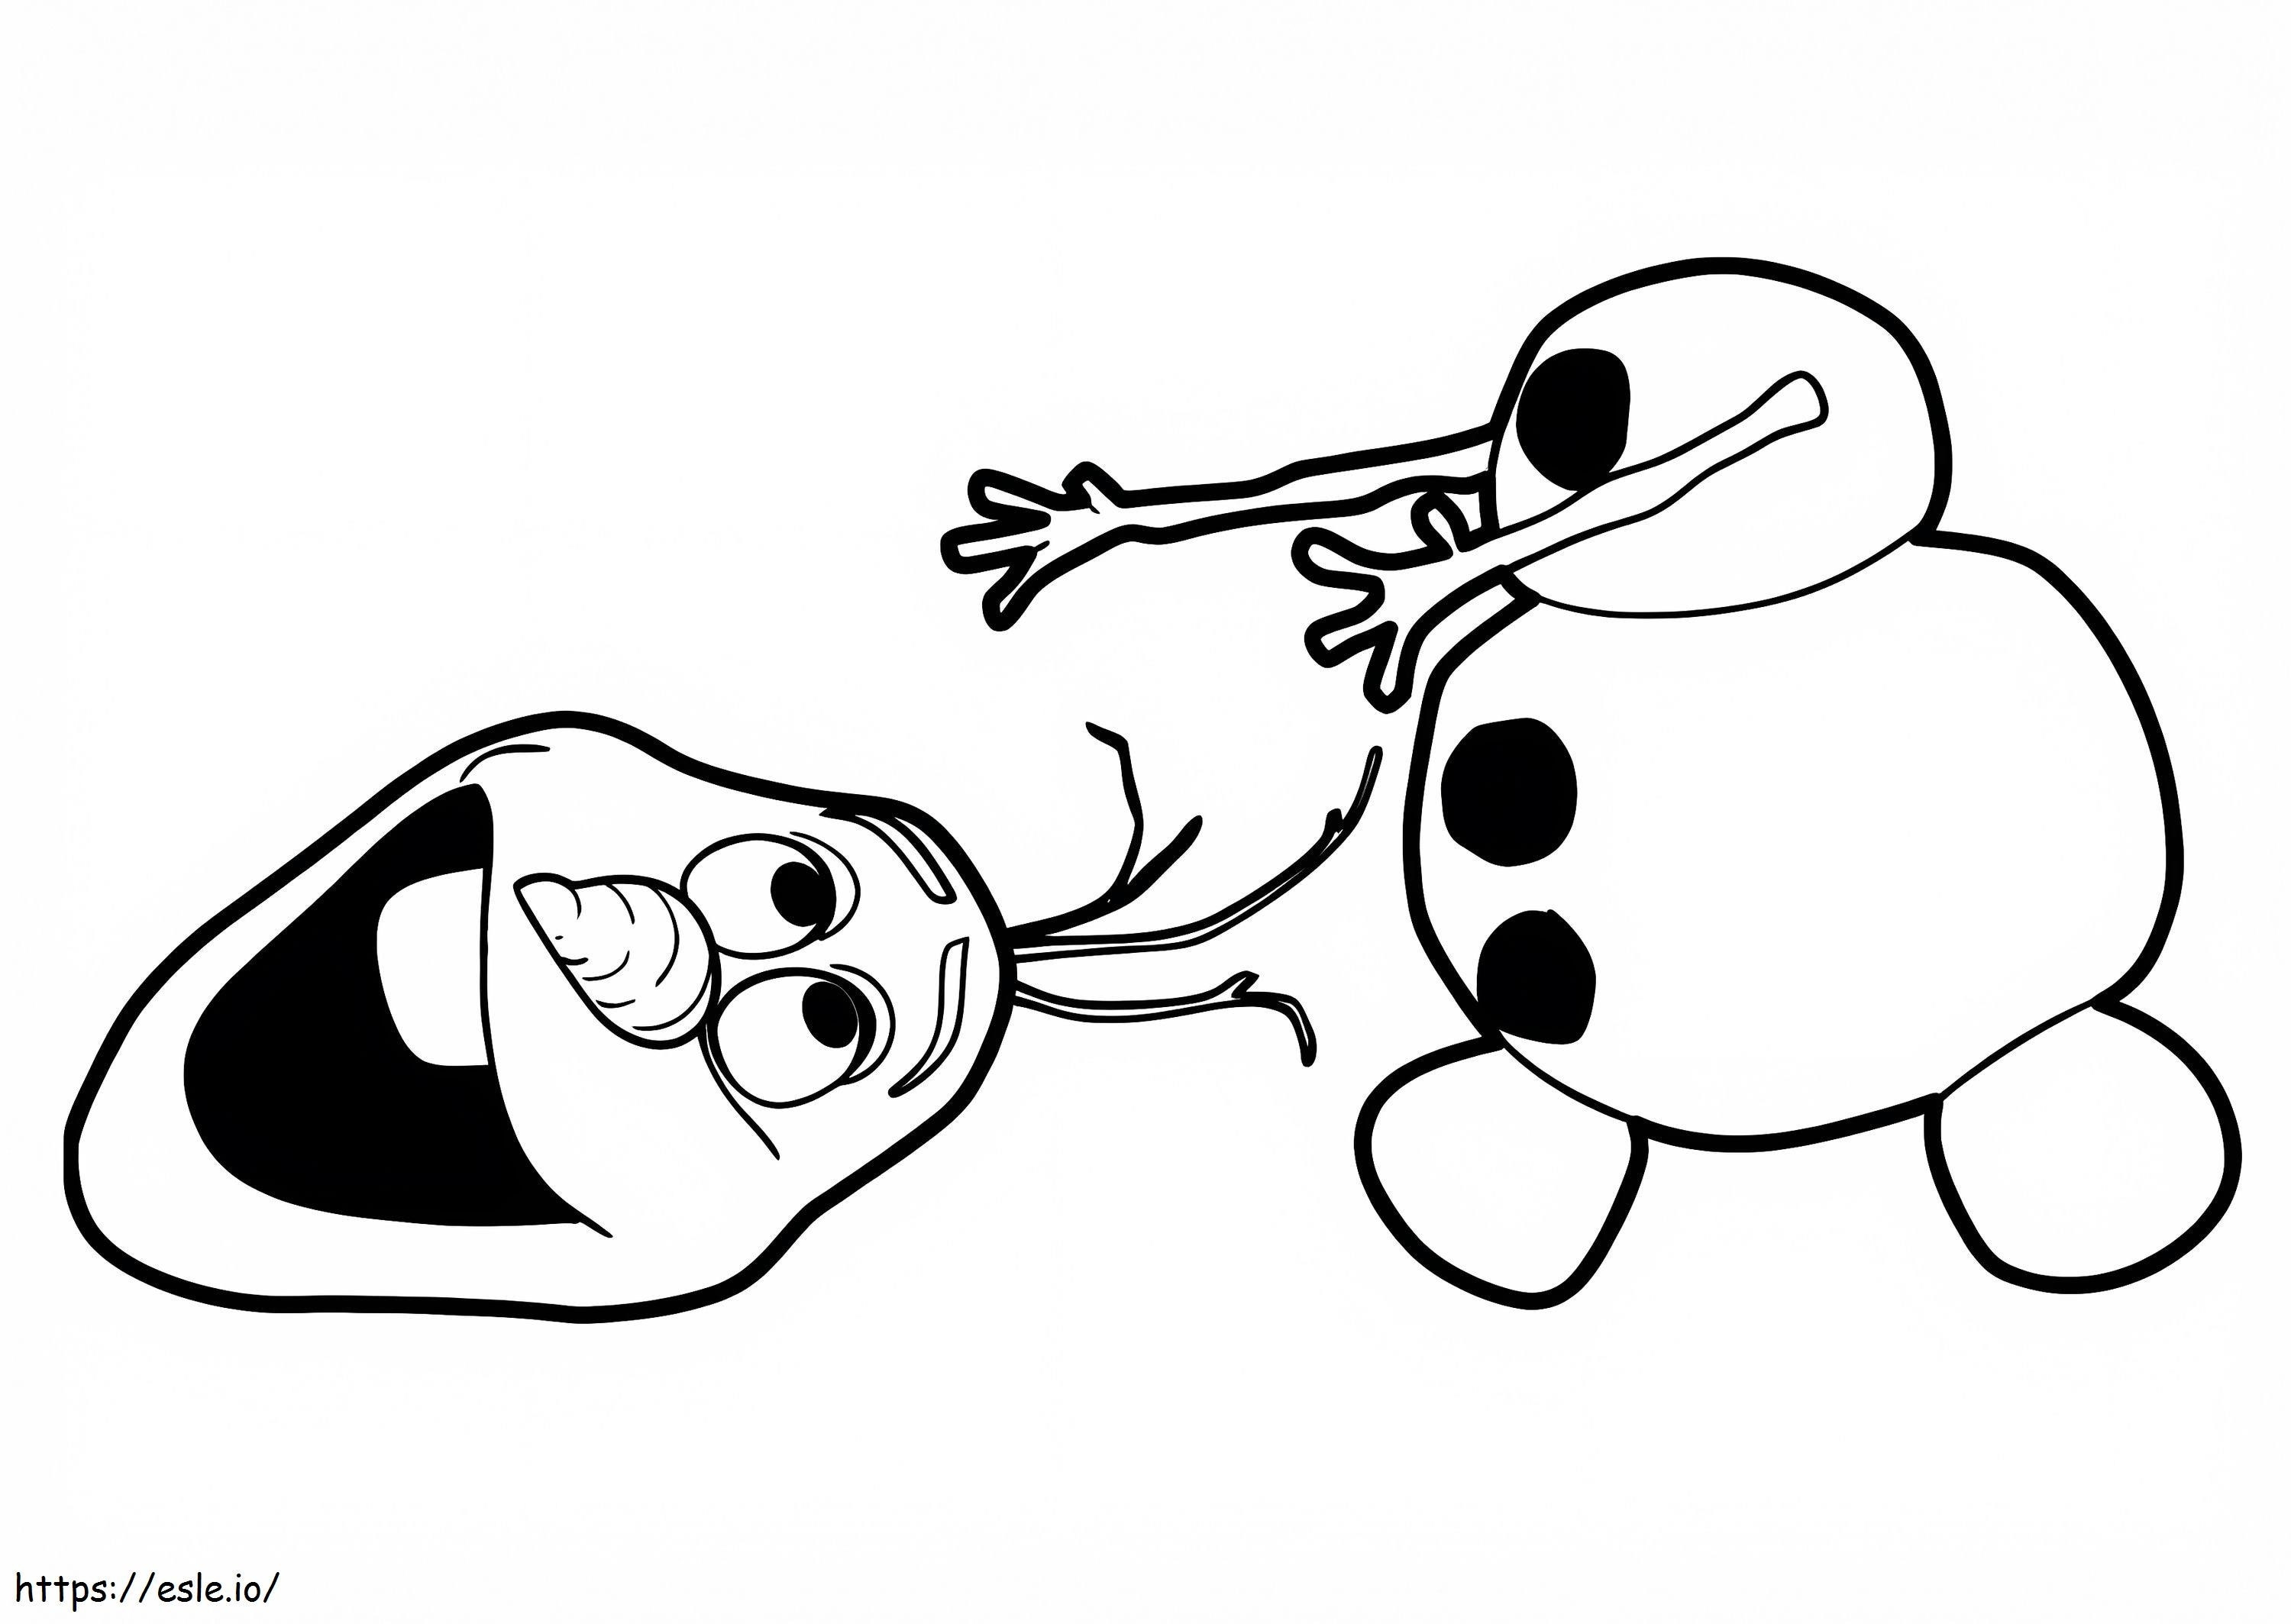 Olaf und Kopf ausmalbilder